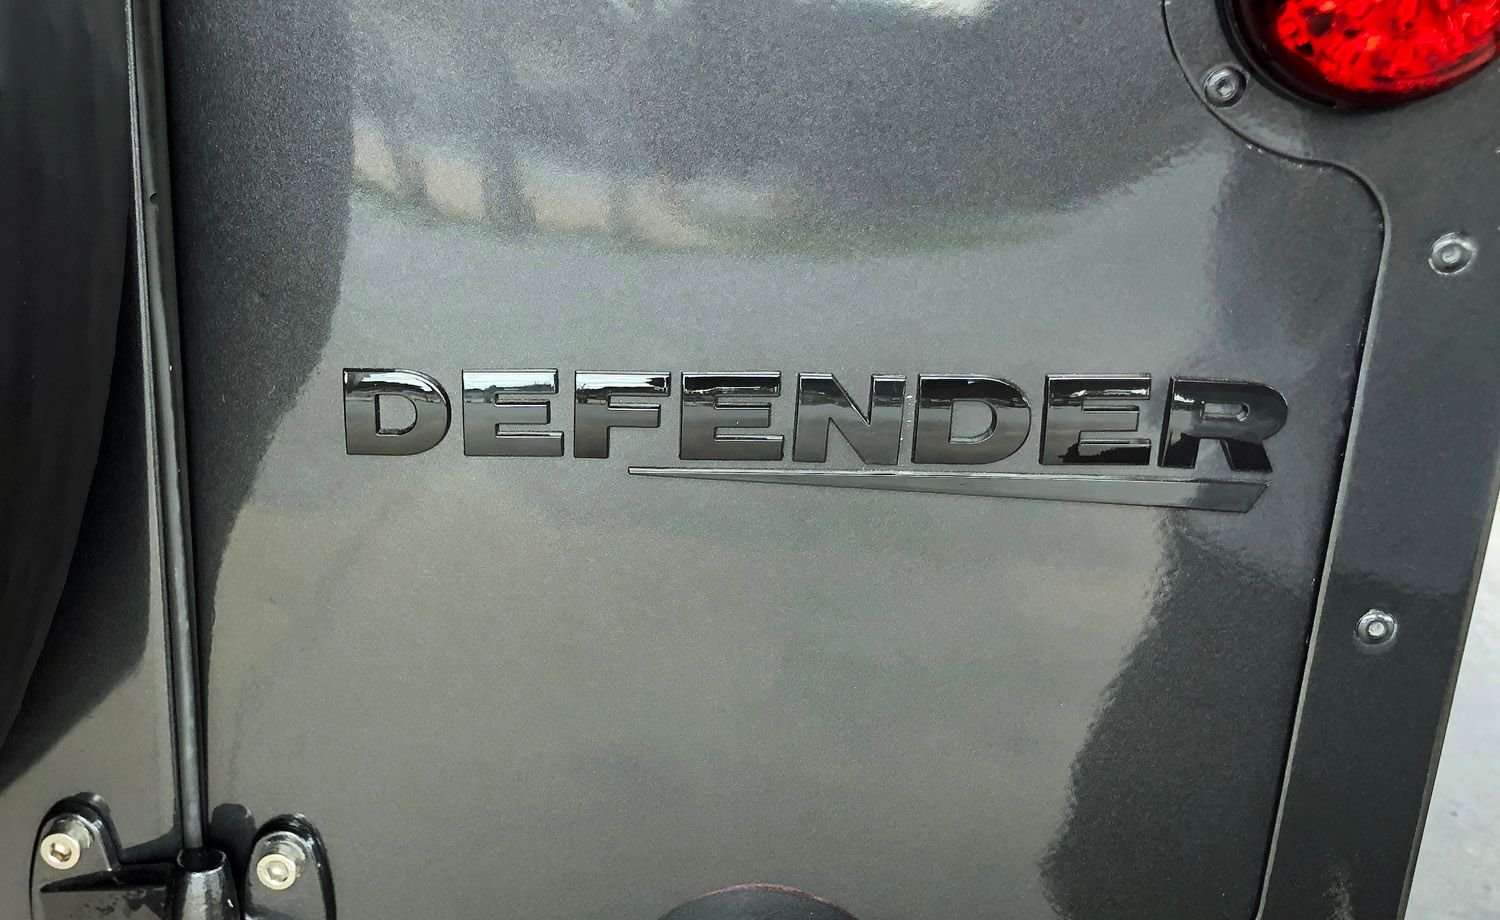 1988 Land Rover Defender